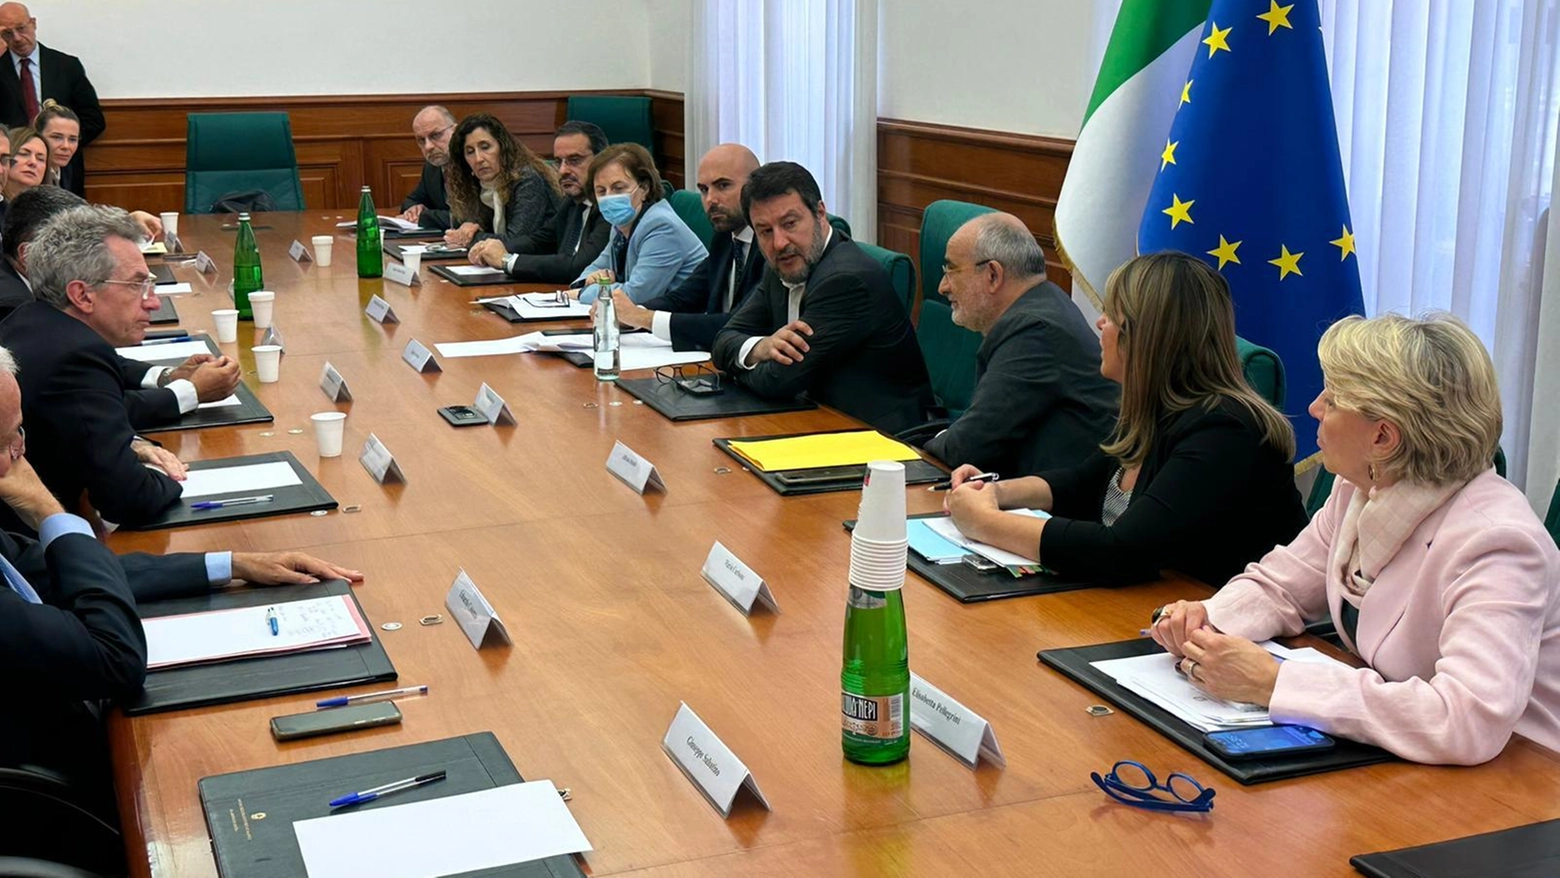 L'incontro di stamattina al Ministero tra Matteo Salvini e, seduto di fronte a lui, il sindaco di Napoli Gaetano Manfredi